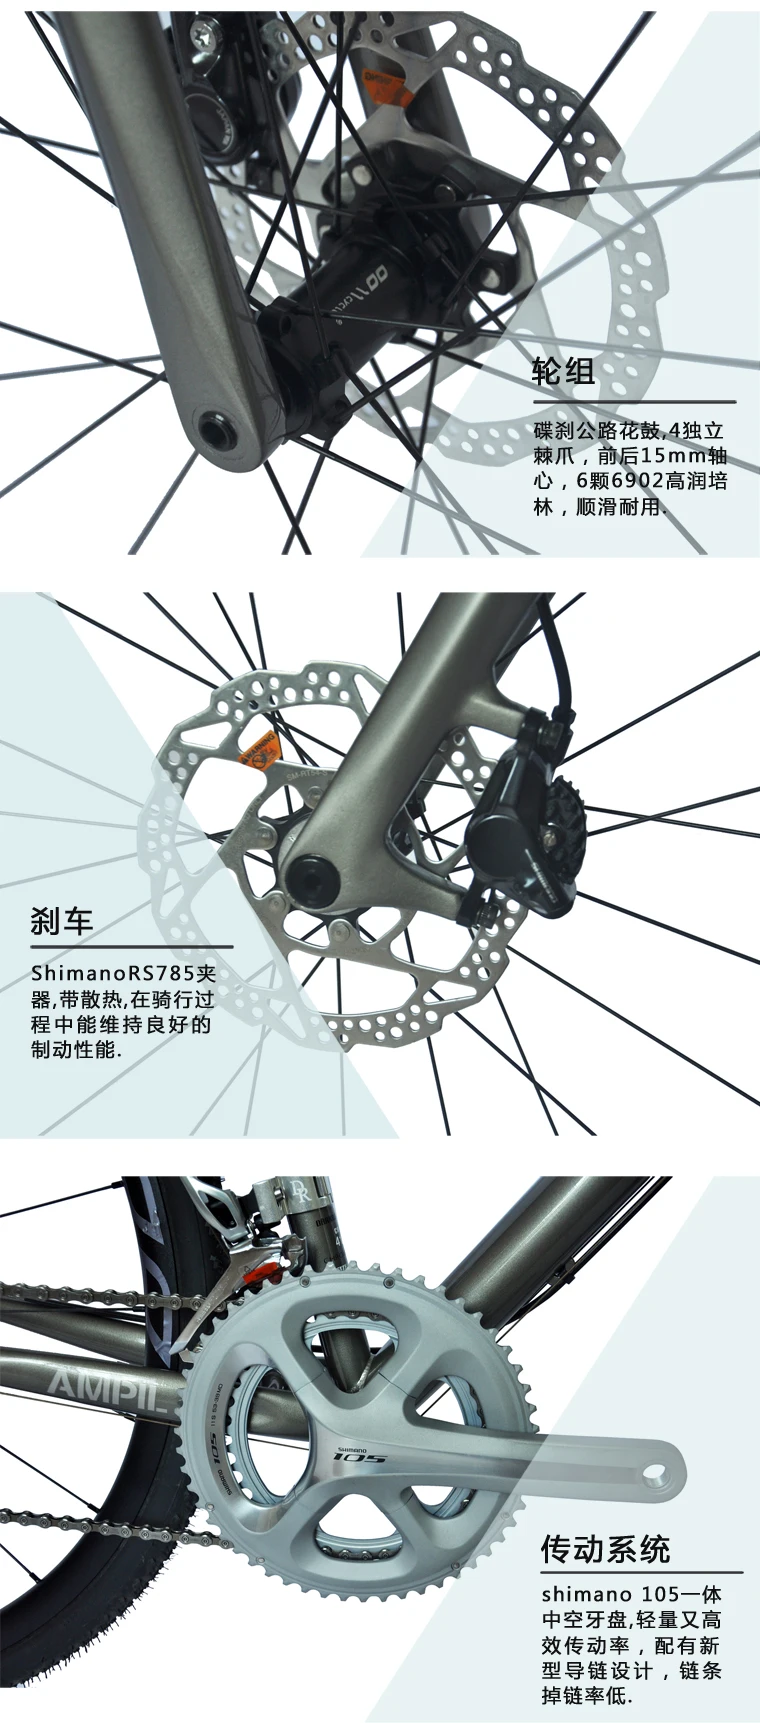 DARKROCK AMPIL 700C велокросс велосипед с shi mano 105 группа набор CR-MO 4135 и Карбоновая вилка 8,9 кг светильник для шоссейных велосипедов